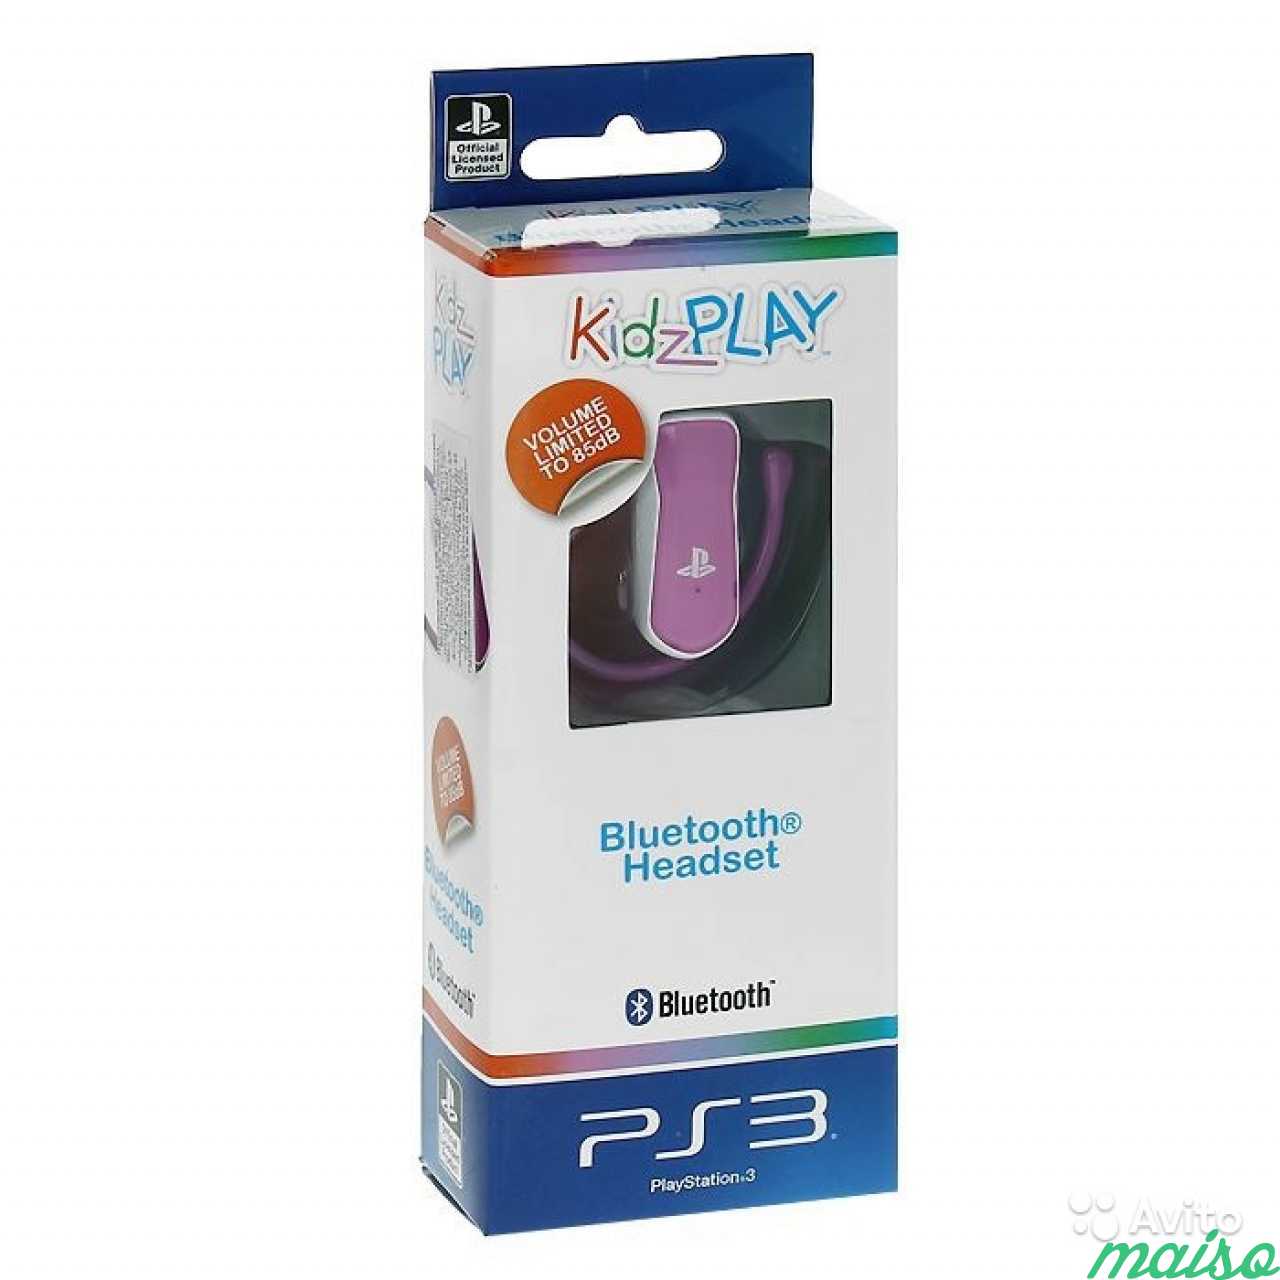 Детская Bluetooth гарнитура Kidz Play для PS3 в Санкт-Петербурге. Фото 1